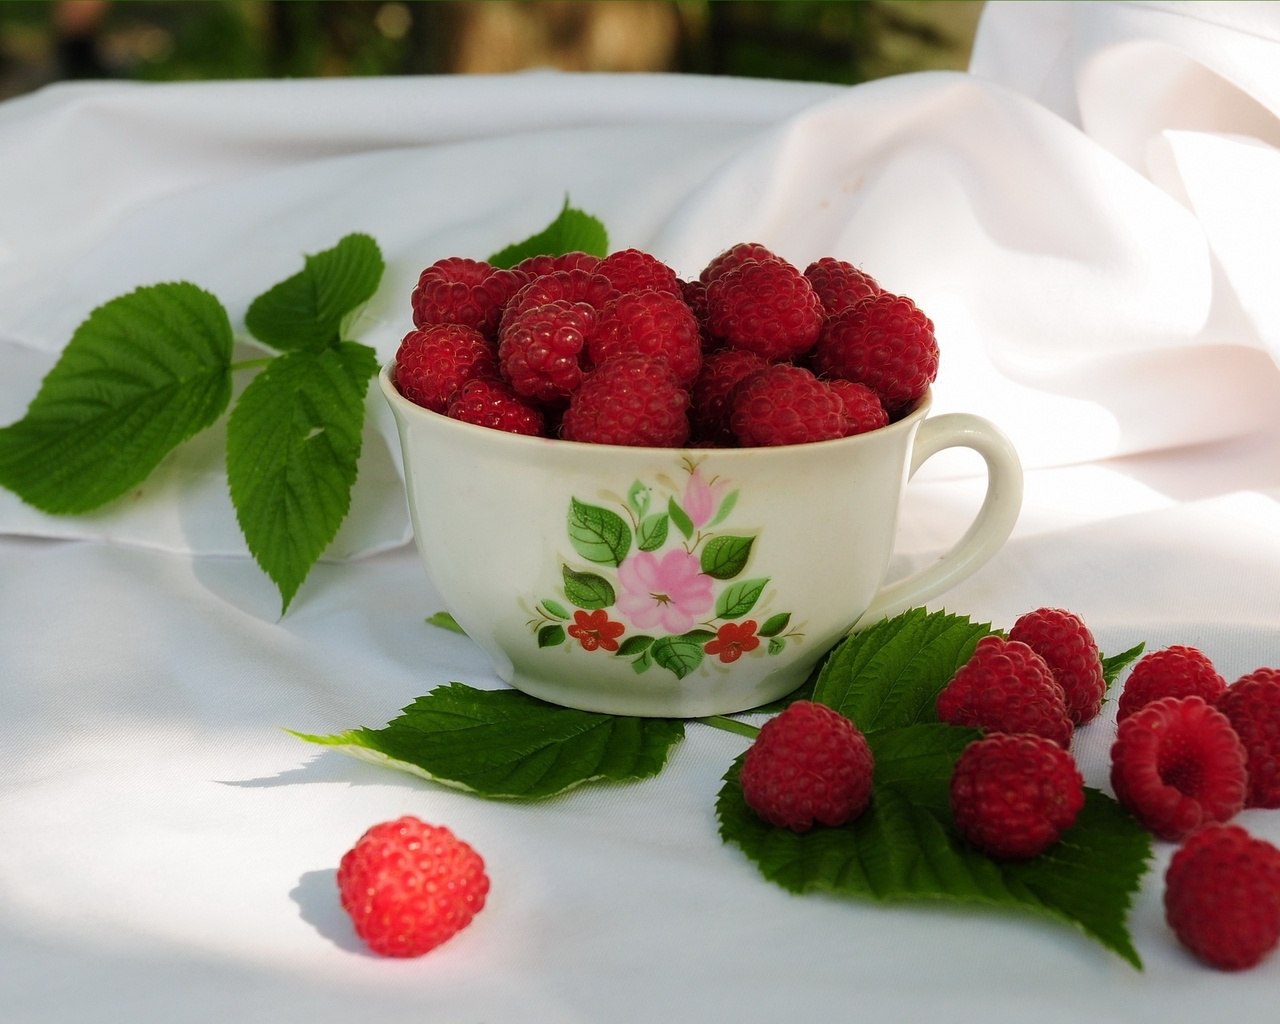 пожелание доброго дня картинки с ягодами